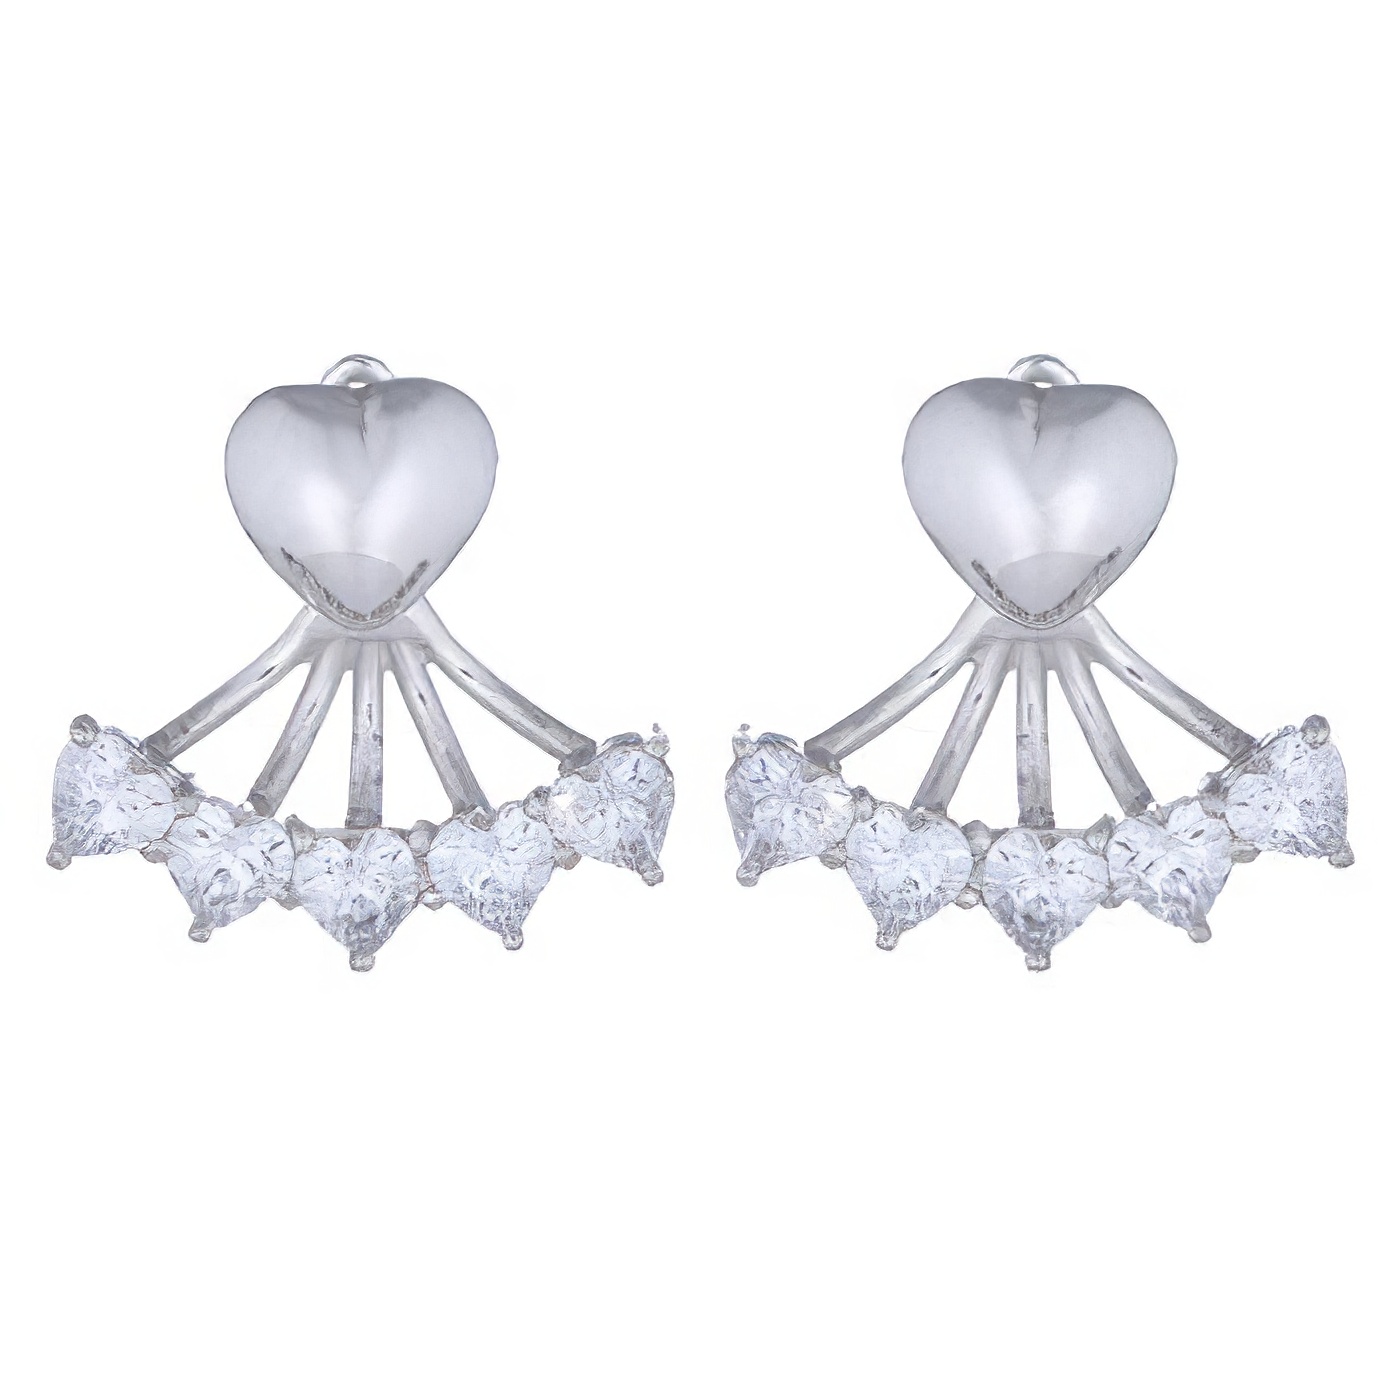 Heart Cubic Zirconia Double Sided Earrings by BeYindi 